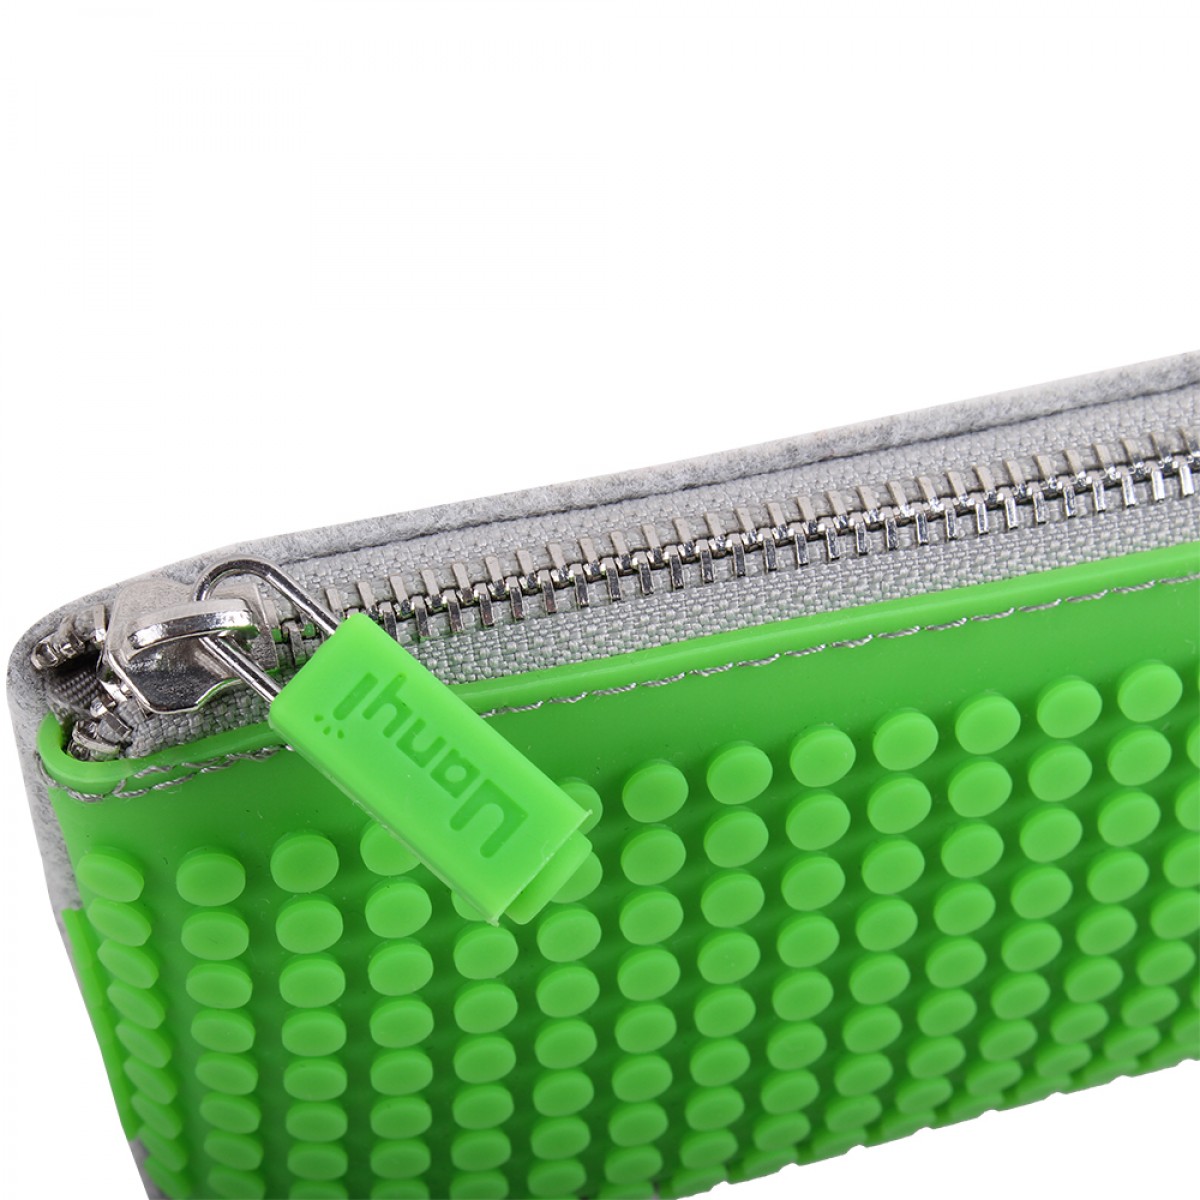 UPixel Pencil Case - Green